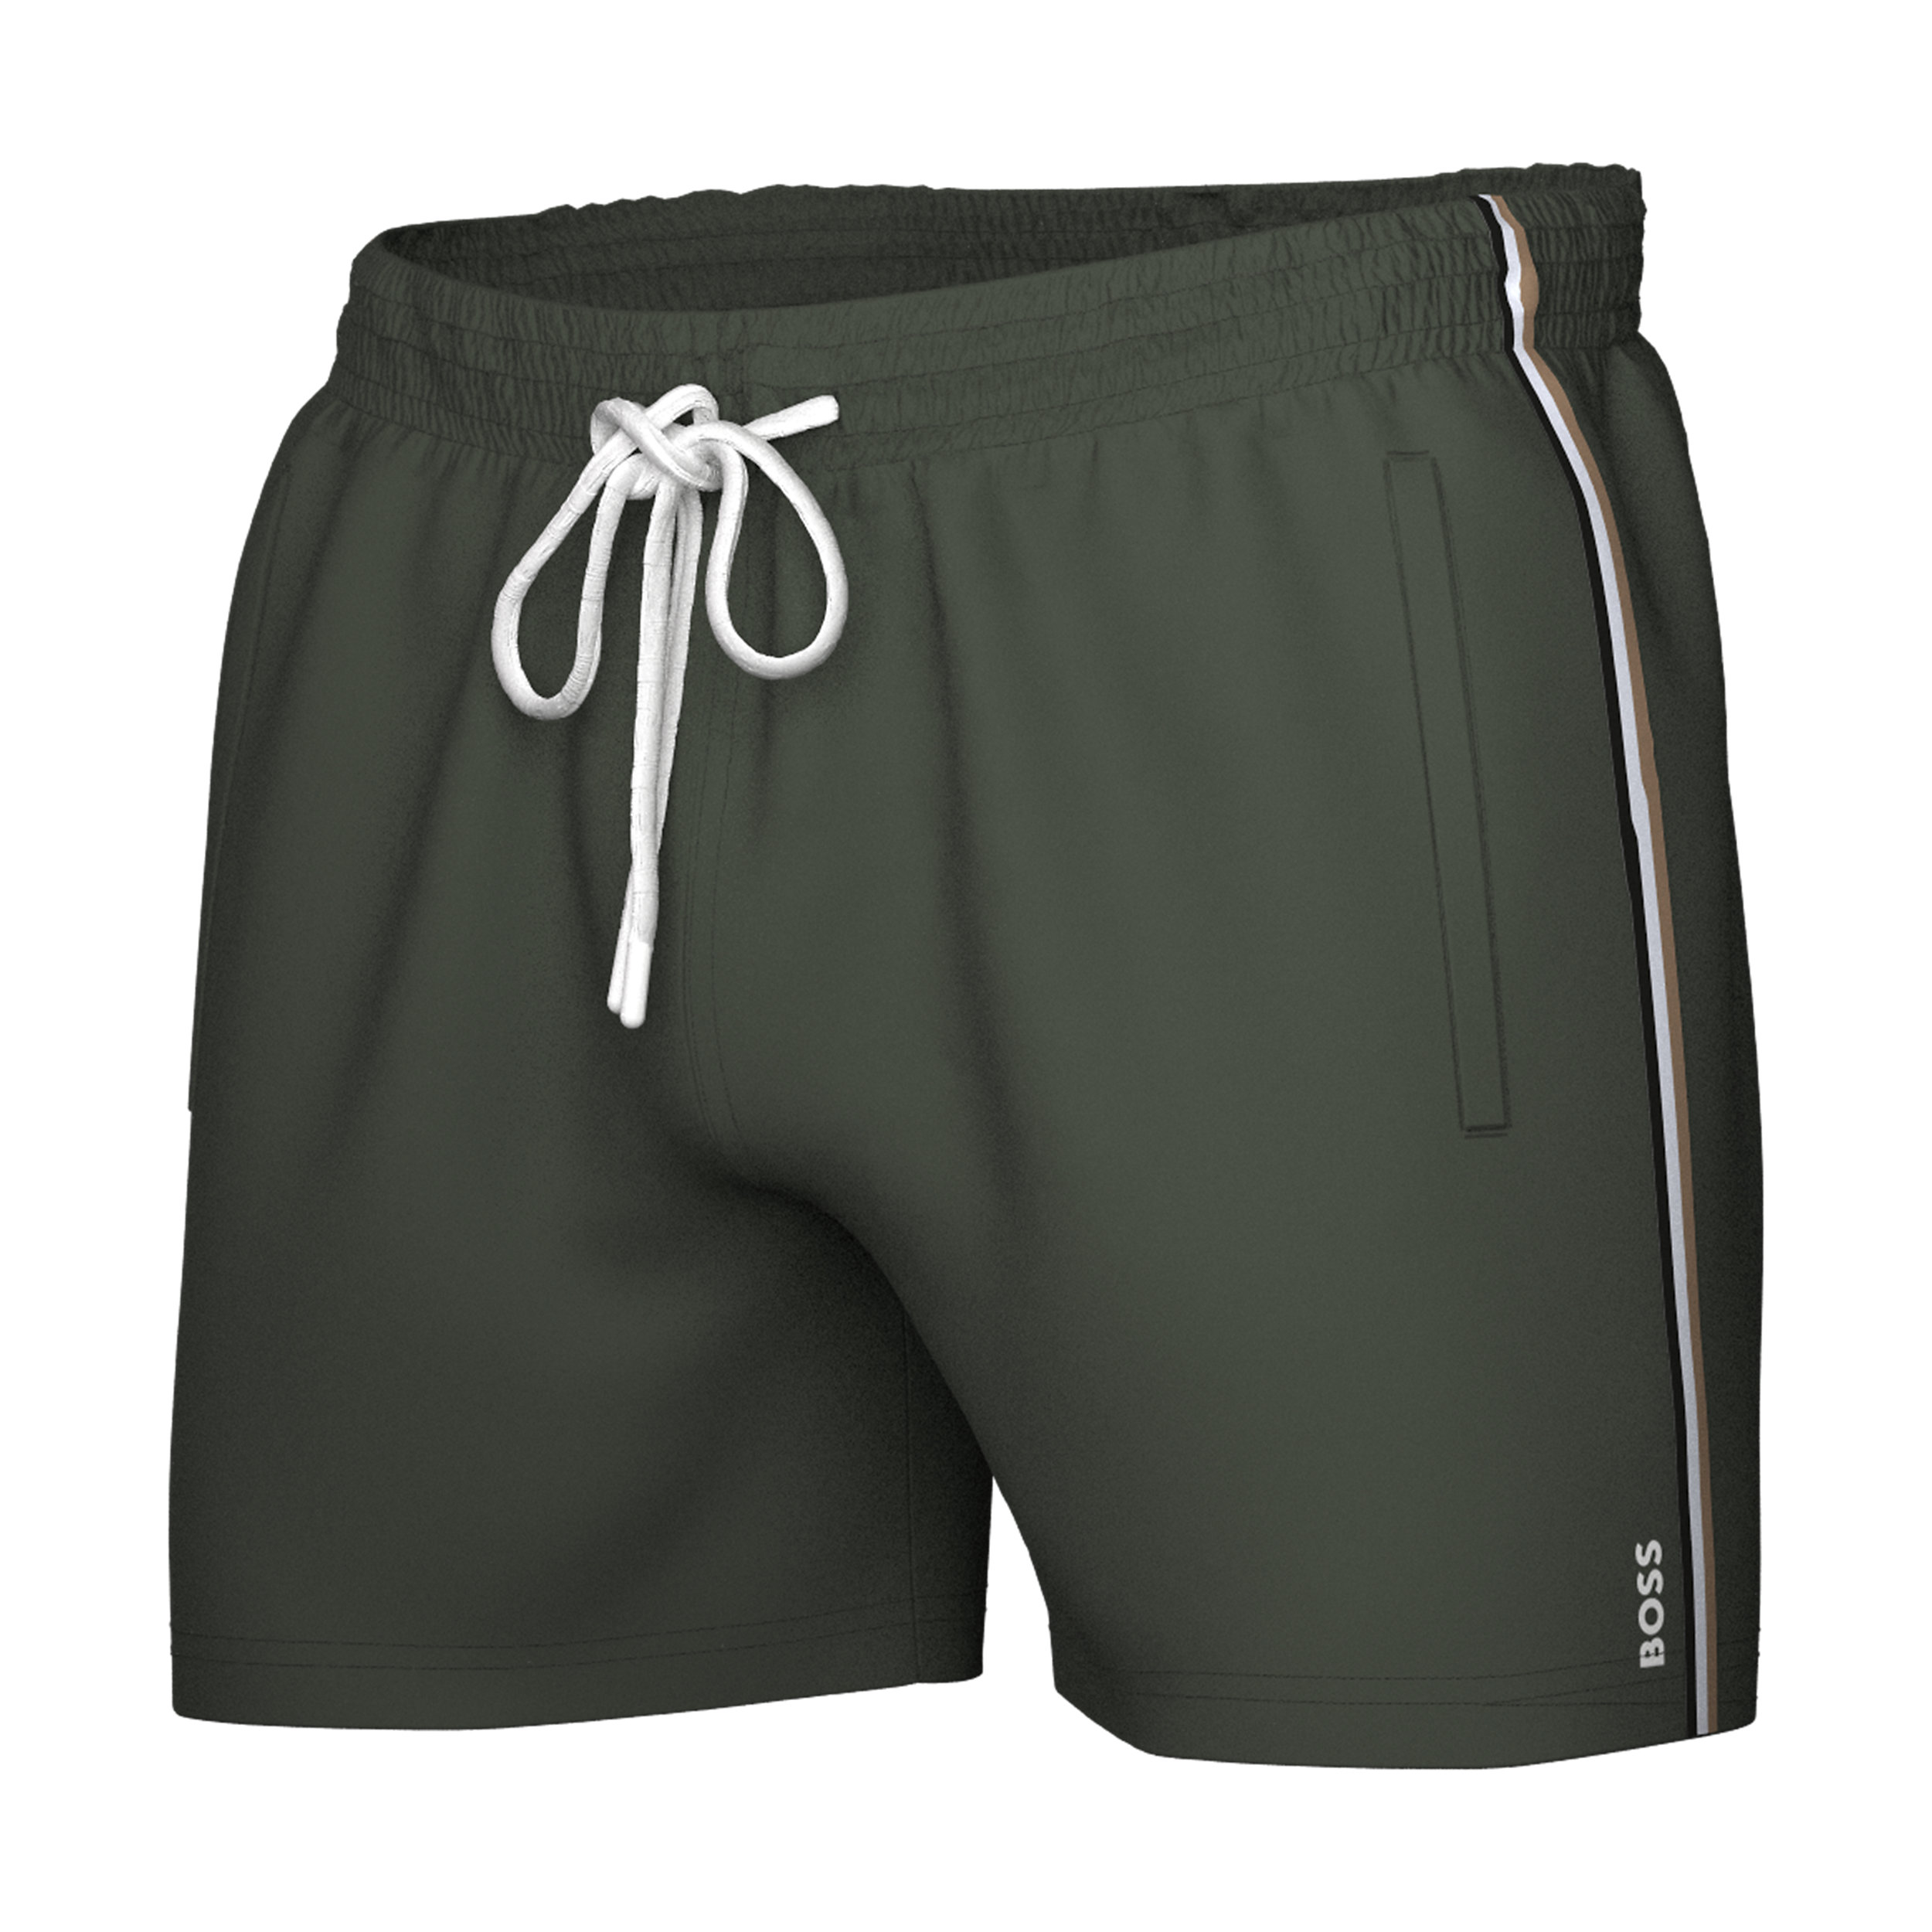 Volg ons Hobart Springplank HUGO BOSS Iconic swim shorts, heren zwembroek, groen - Shop de nieuwste  voorjaarsmode